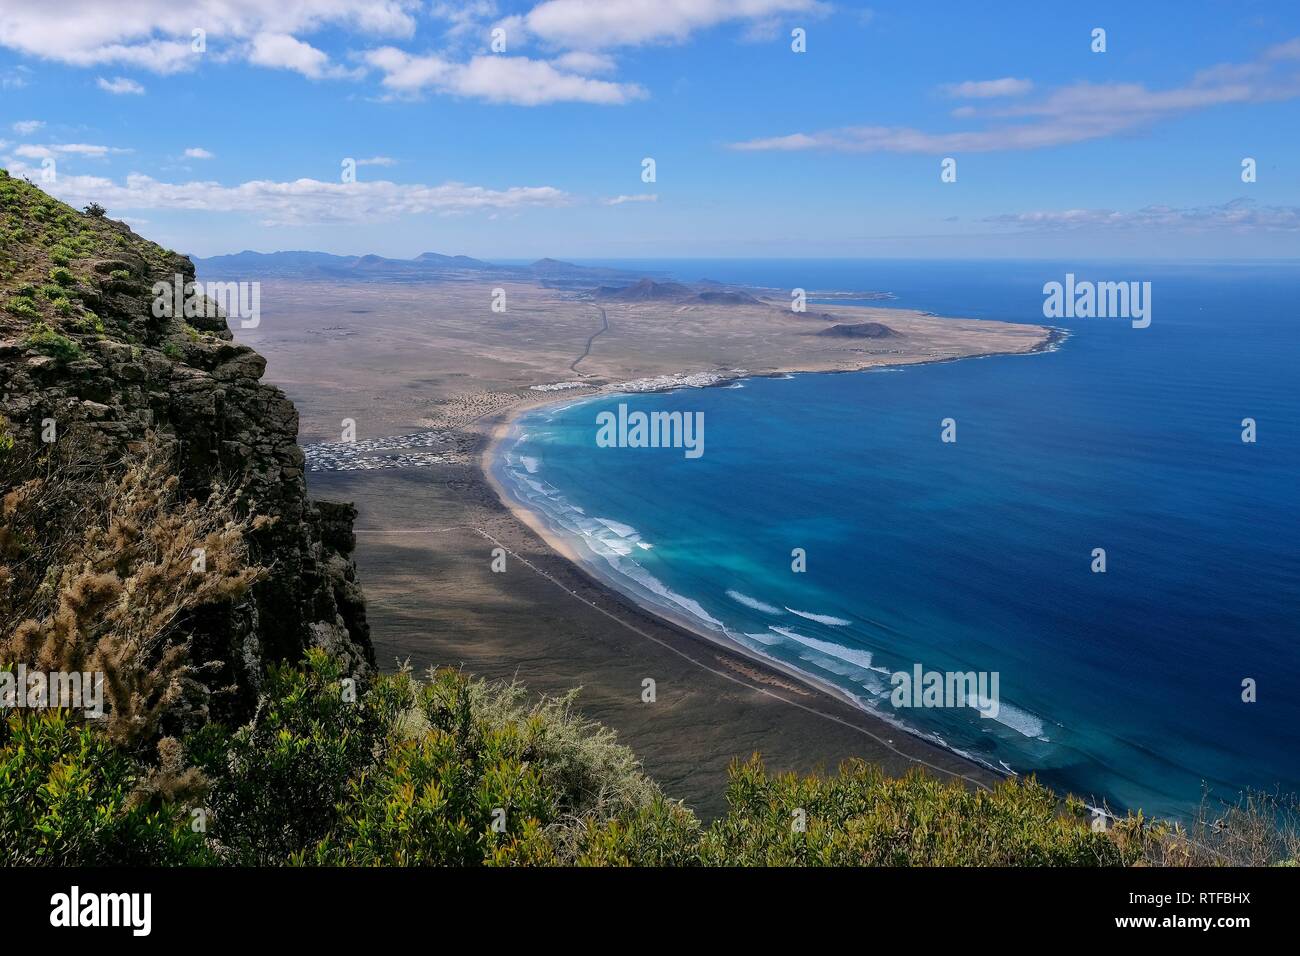 Vista desde el Mirador del bosquecillo de Caleta de Famara con playa de Famara, Lanzarote, ESPAÑA Foto de stock